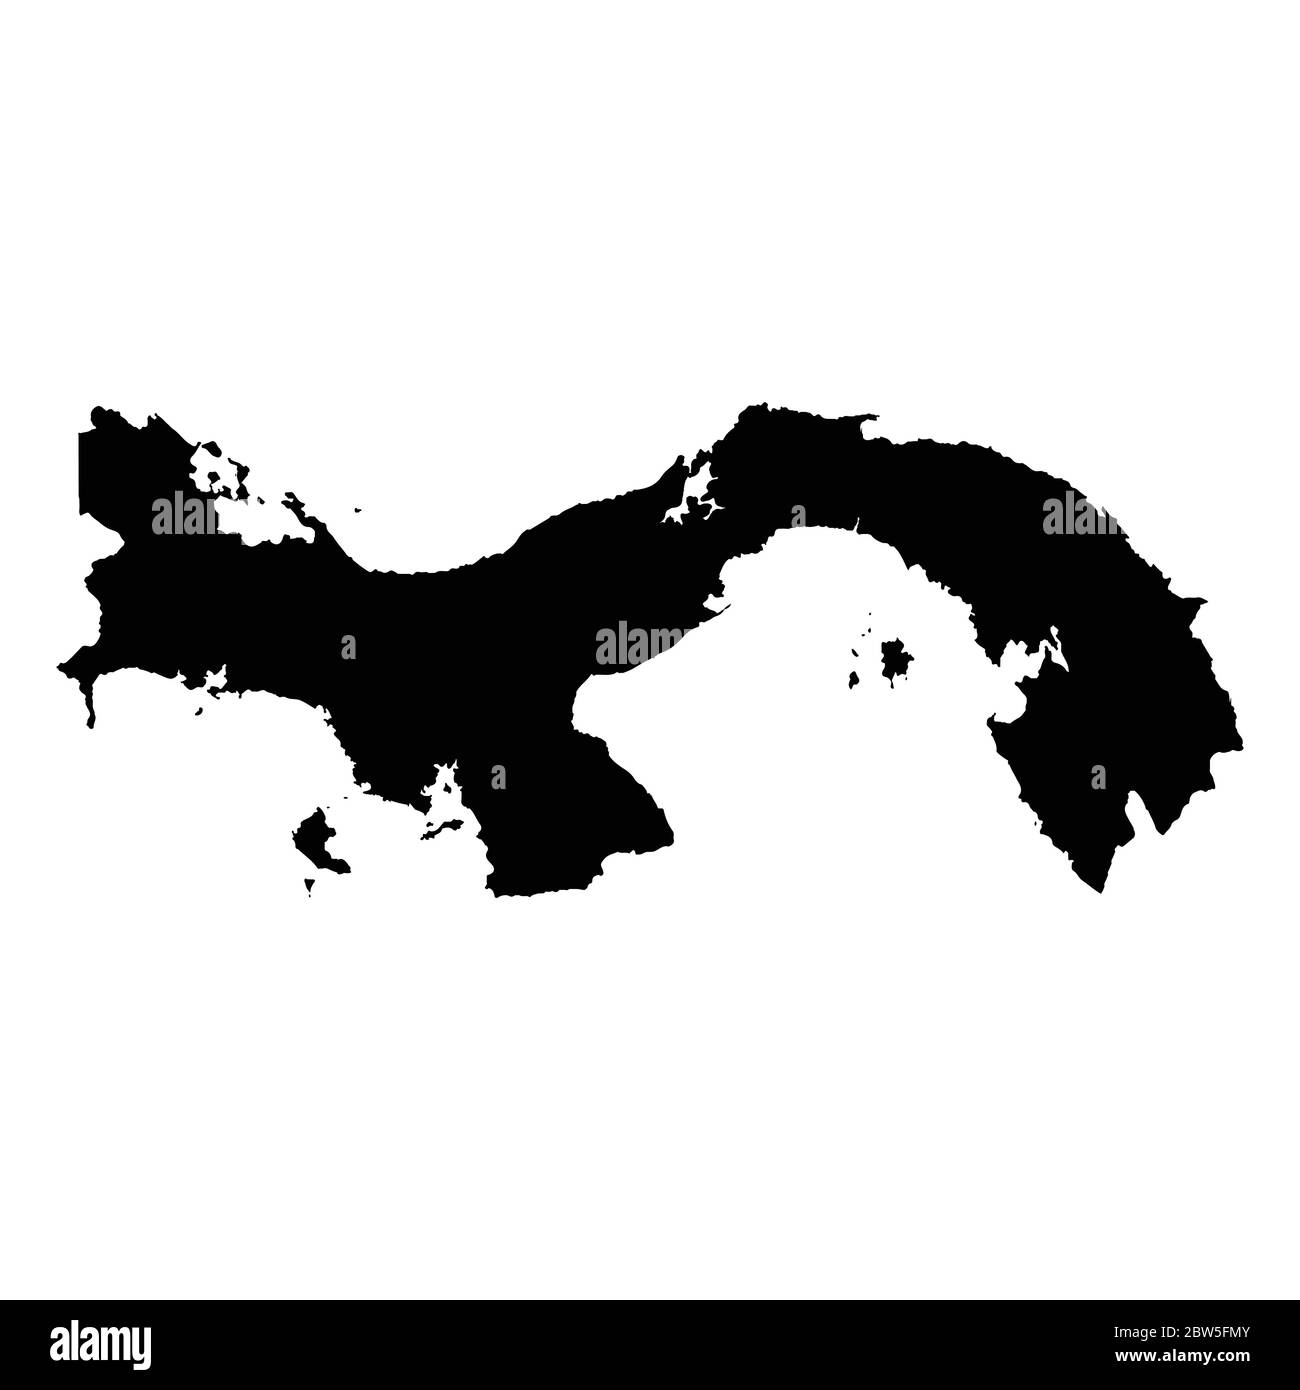 Vektorkarte Panama. Land und Hauptstadt. Isolierte Vektorgrafik. Schwarz auf weißem Hintergrund. EPS 10-Abbildung. Stock Vektor